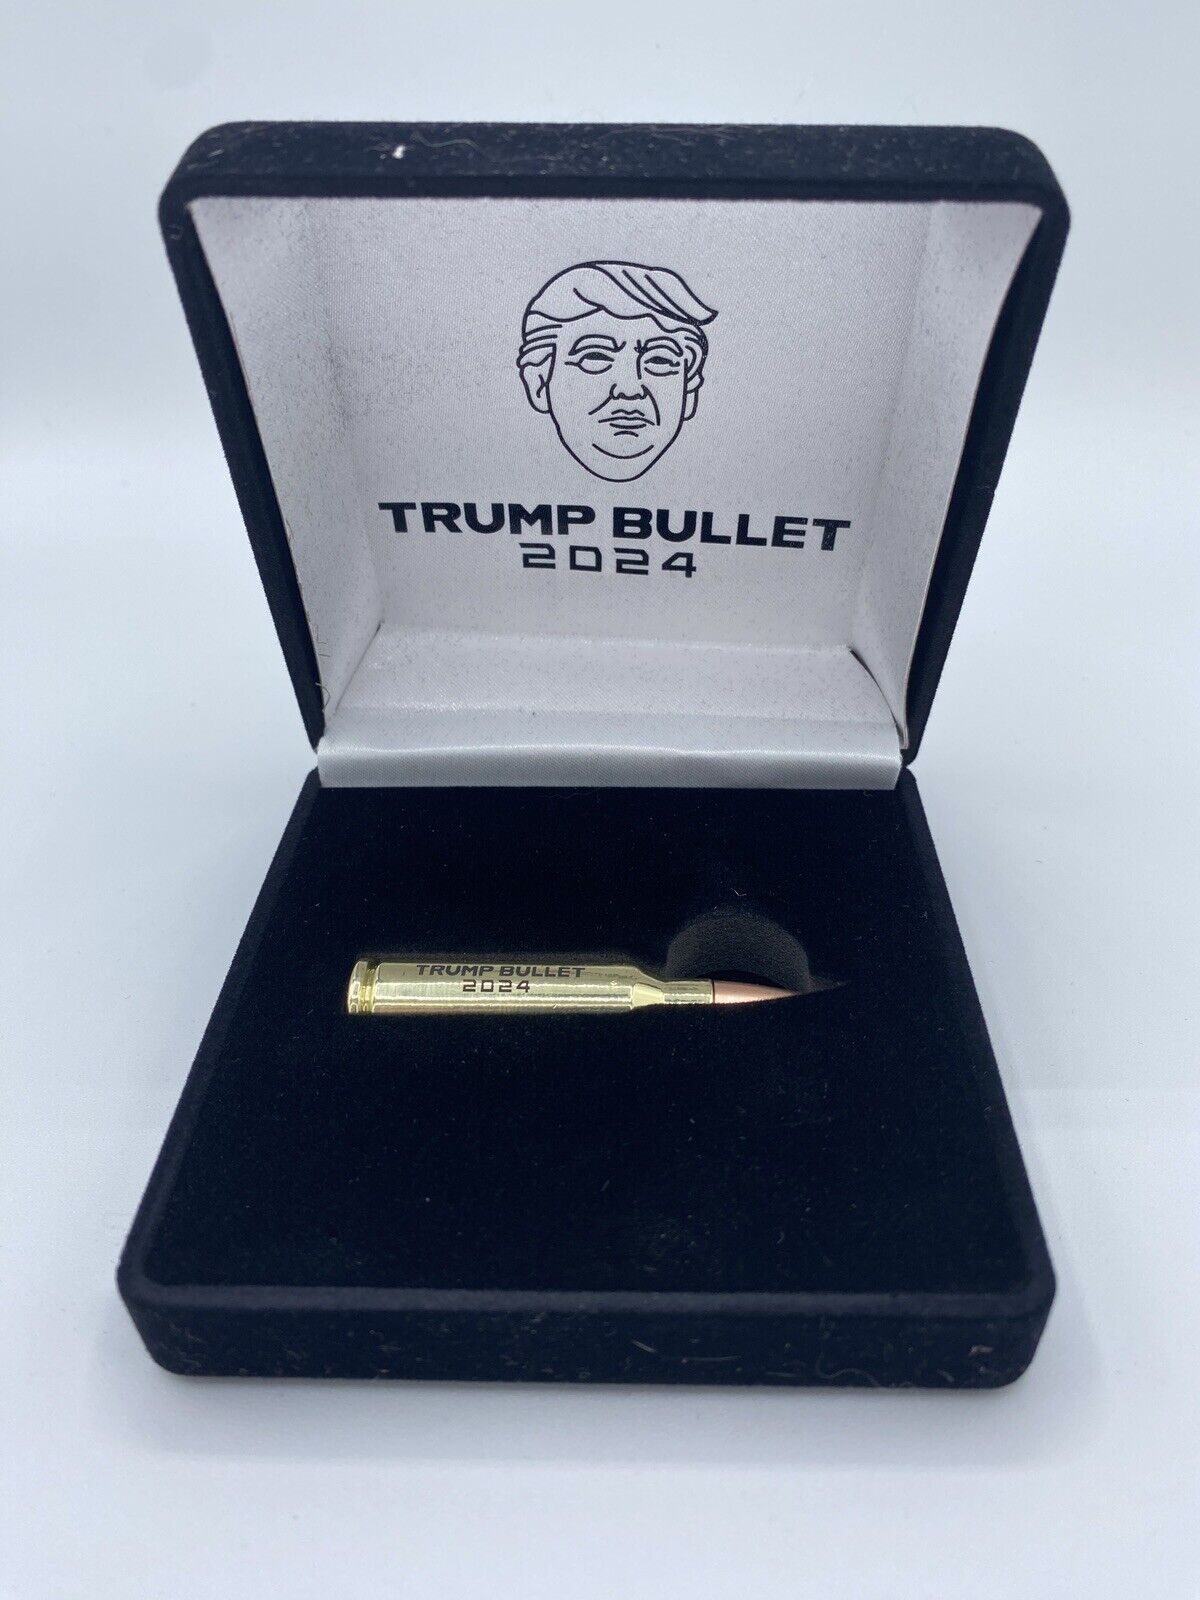 Trump 2024 Collectible Bullet Commemorative Collectors Item New